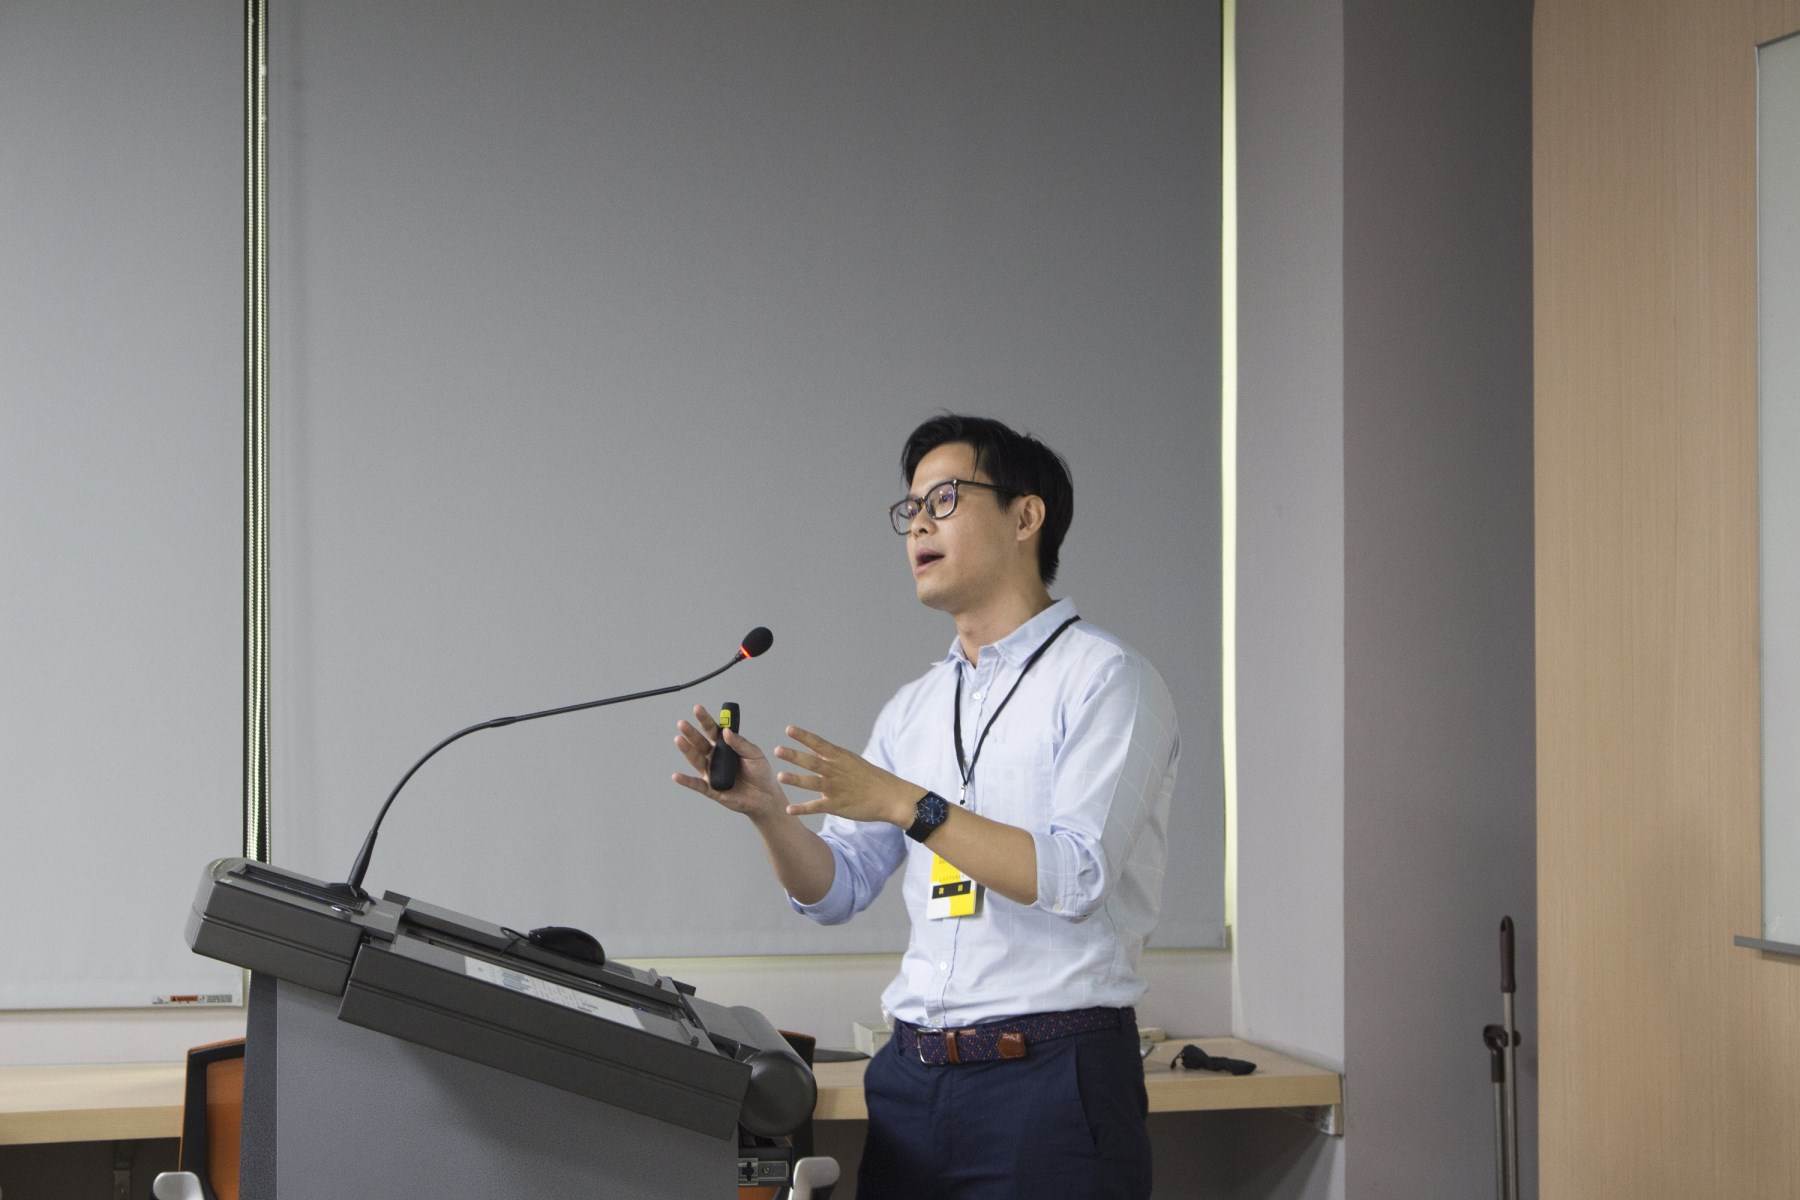 國立台灣科技大學建築系教授陳彥廷講座分享